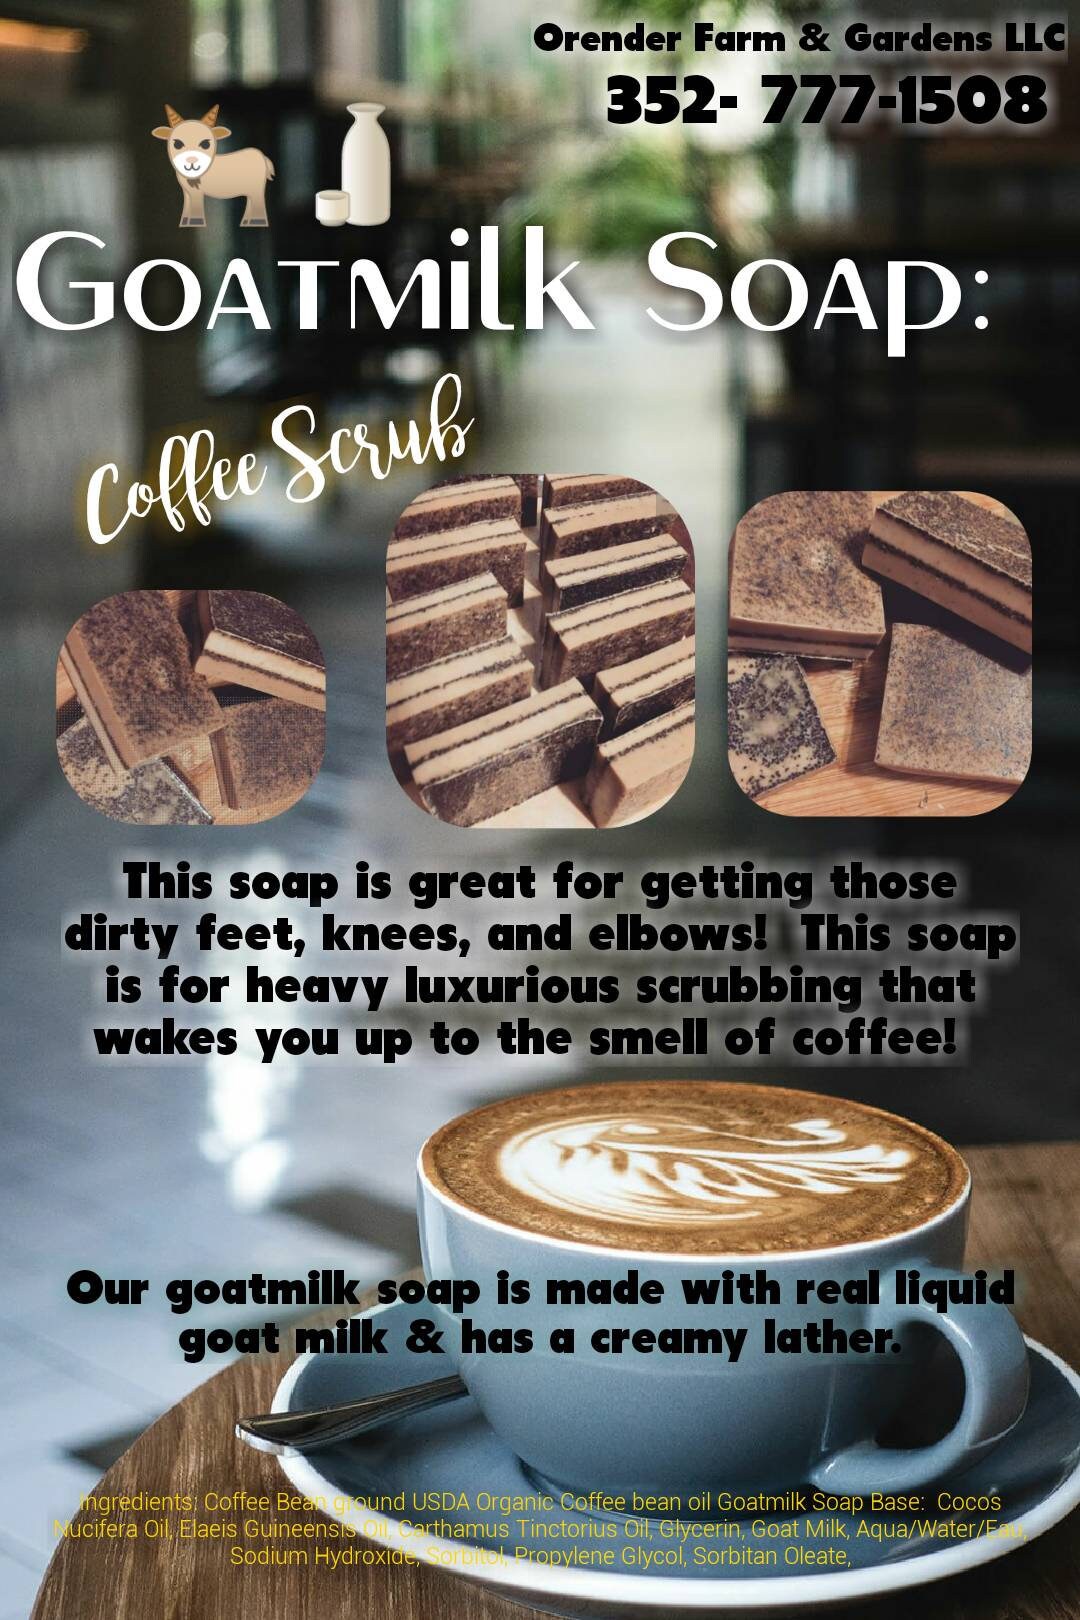 GoatMilk Soap Bars: 3 Coffee Scrubb Bars